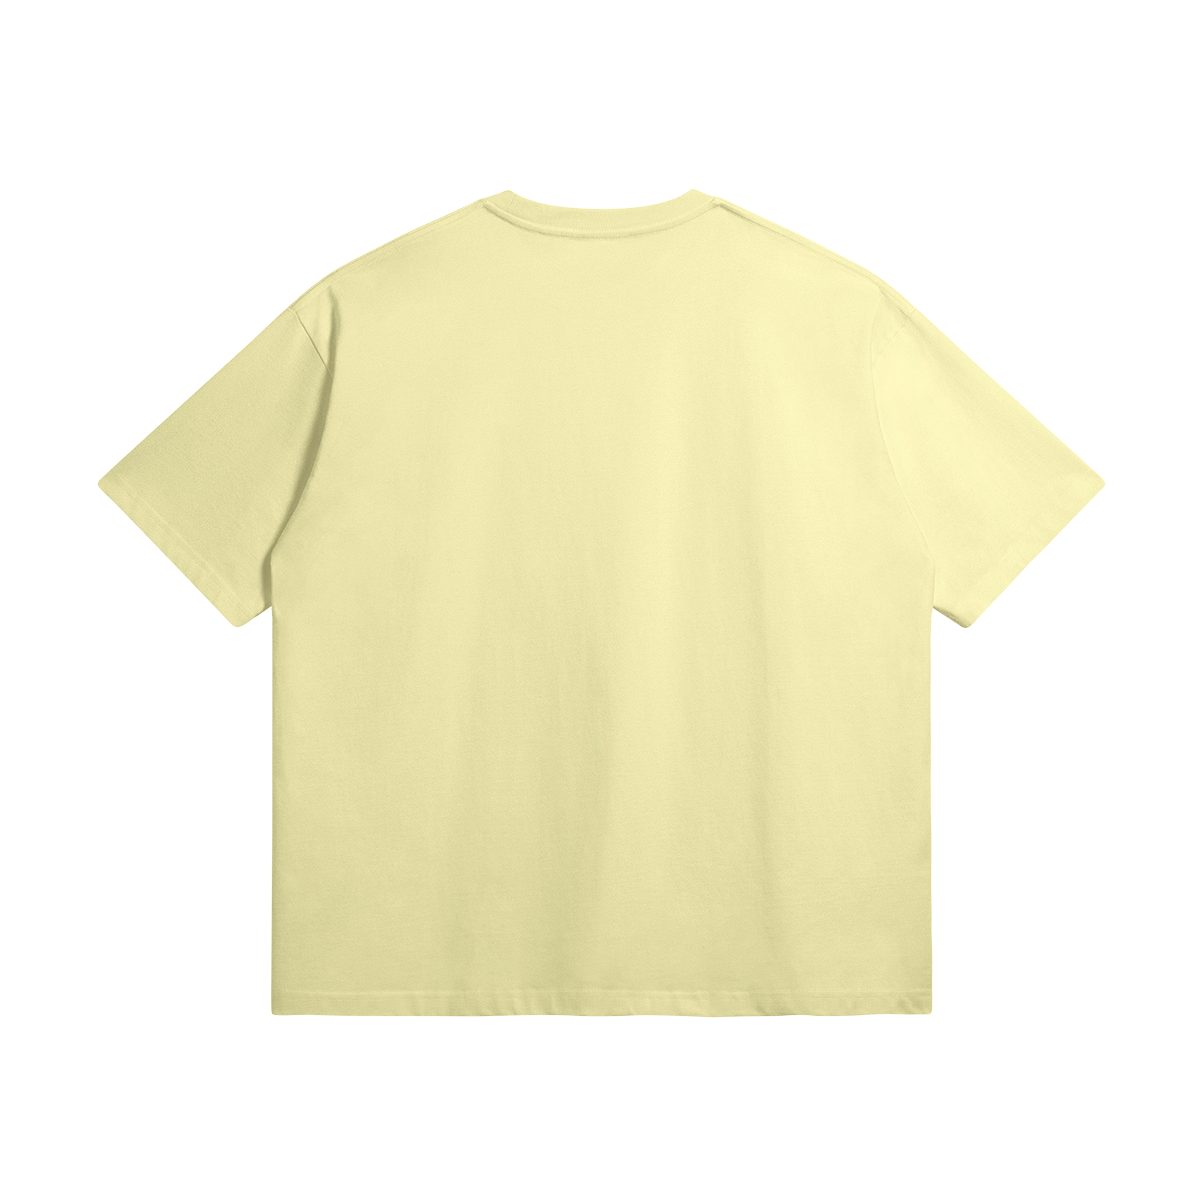 G*D - Superior quality 100% cotton T-shirt